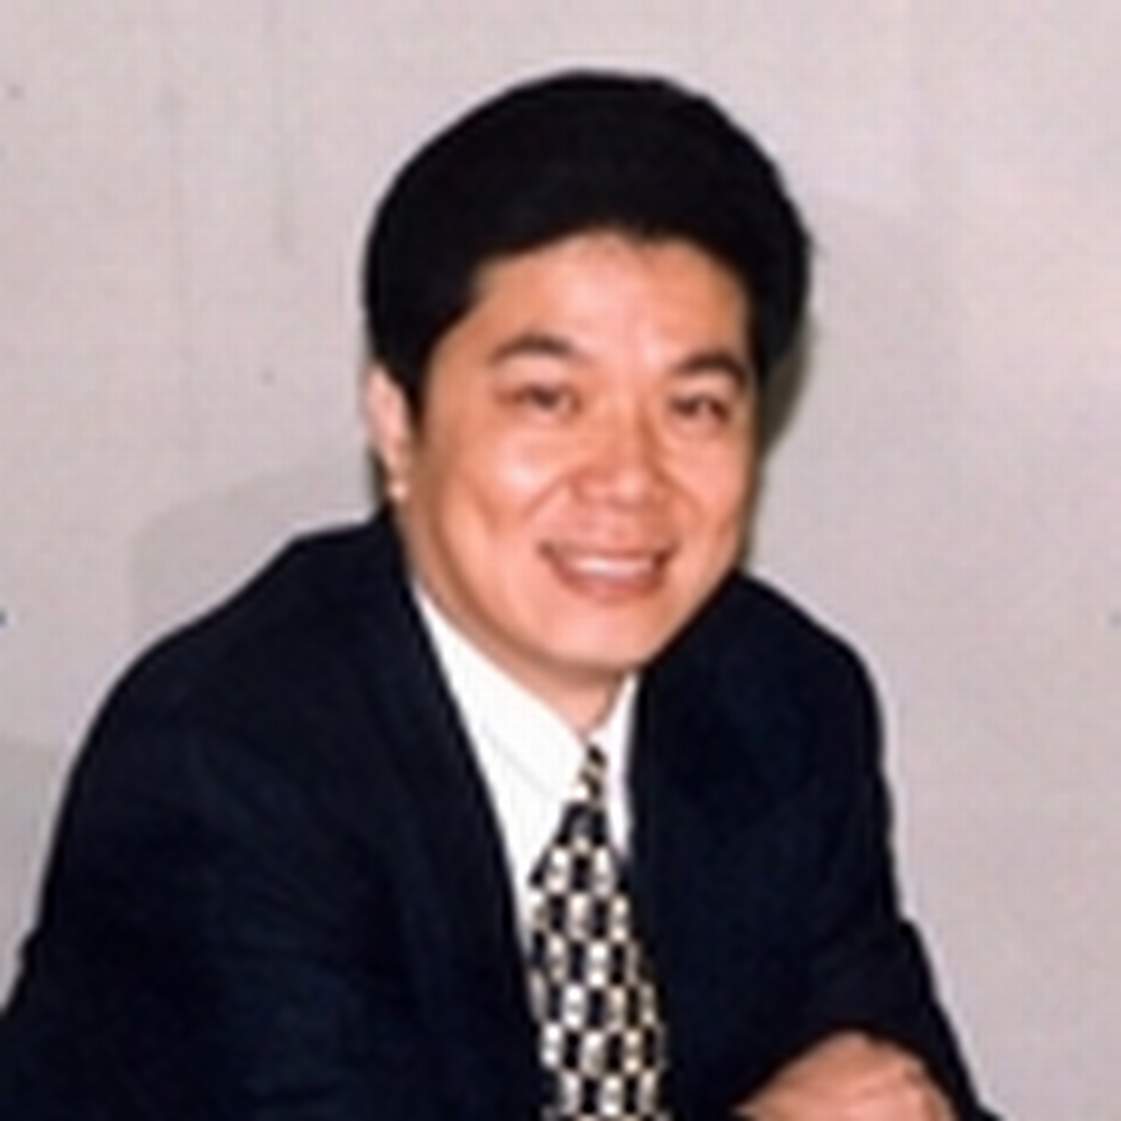 張雲明(北京地質學院物探系物探高級工程師)